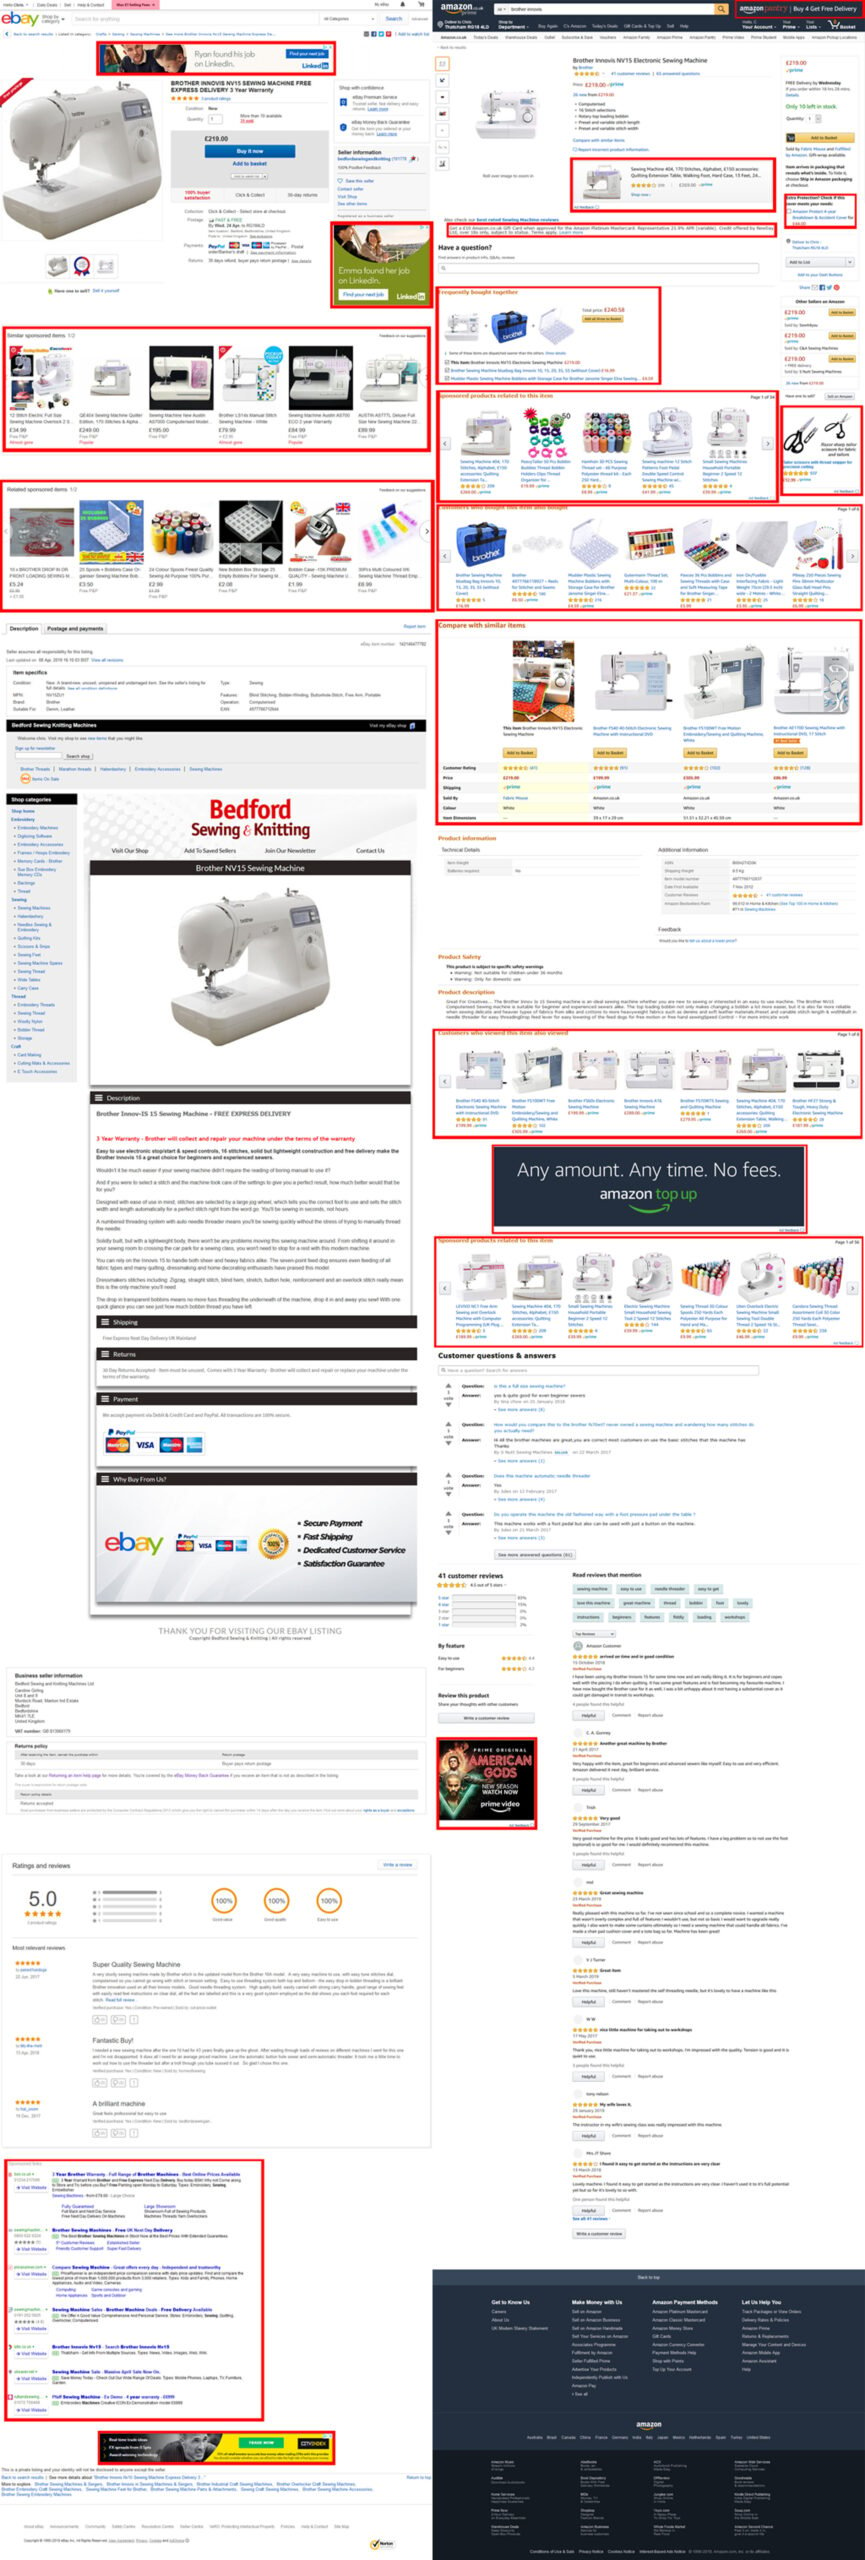 Adverts on eBay and Amazon